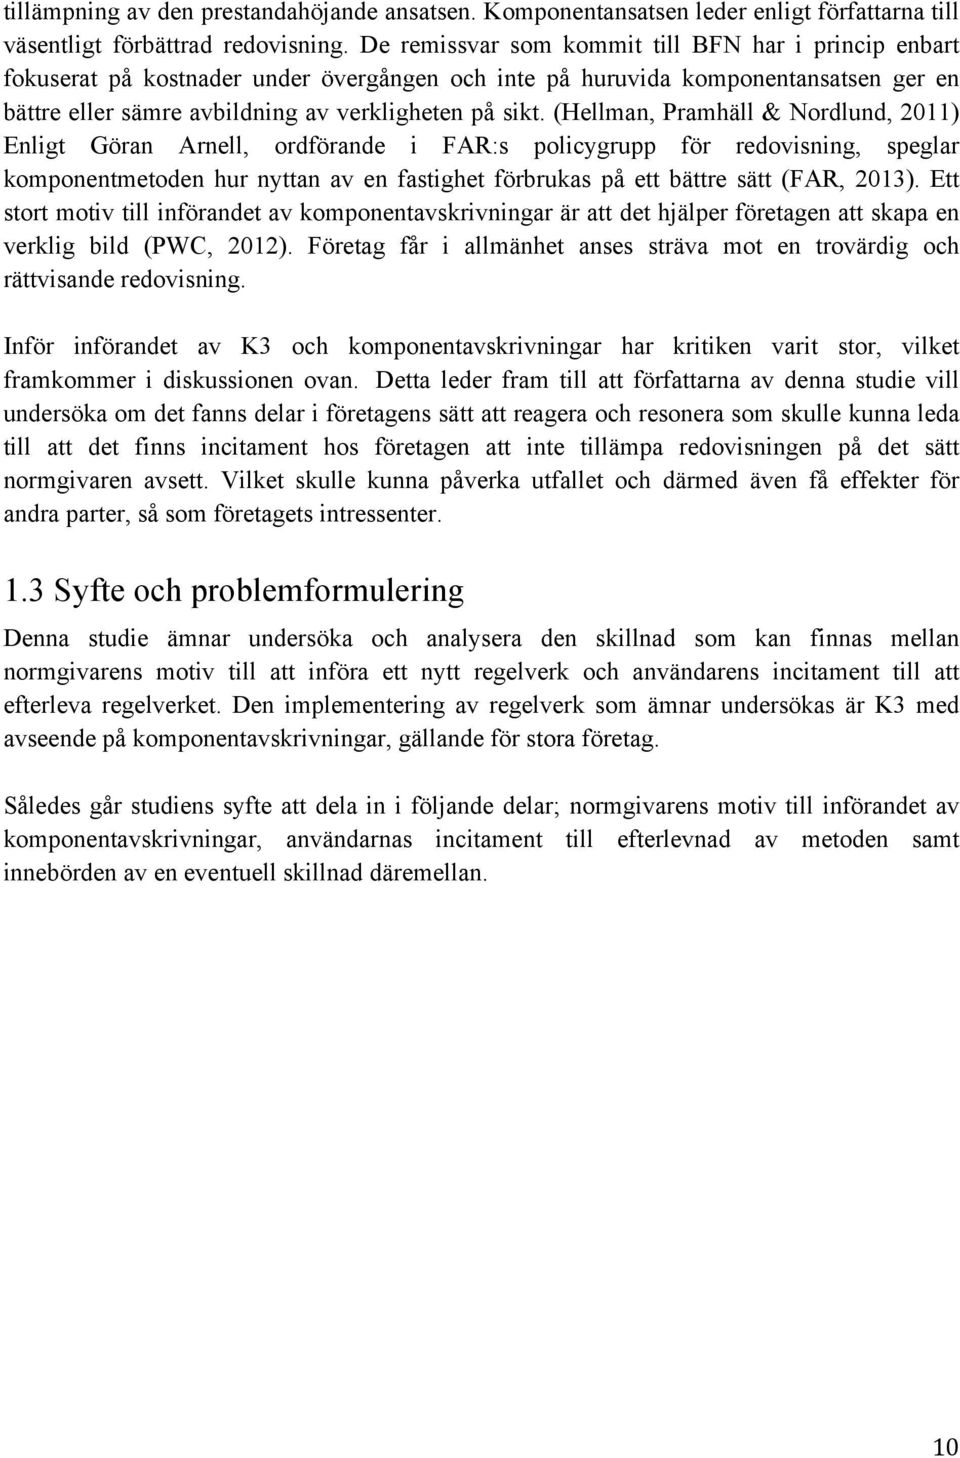 (Hellman, Pramhäll & Nordlund, 2011) Enligt Göran Arnell, ordförande i FAR:s policygrupp för redovisning, speglar komponentmetoden hur nyttan av en fastighet förbrukas på ett bättre sätt (FAR, 2013).